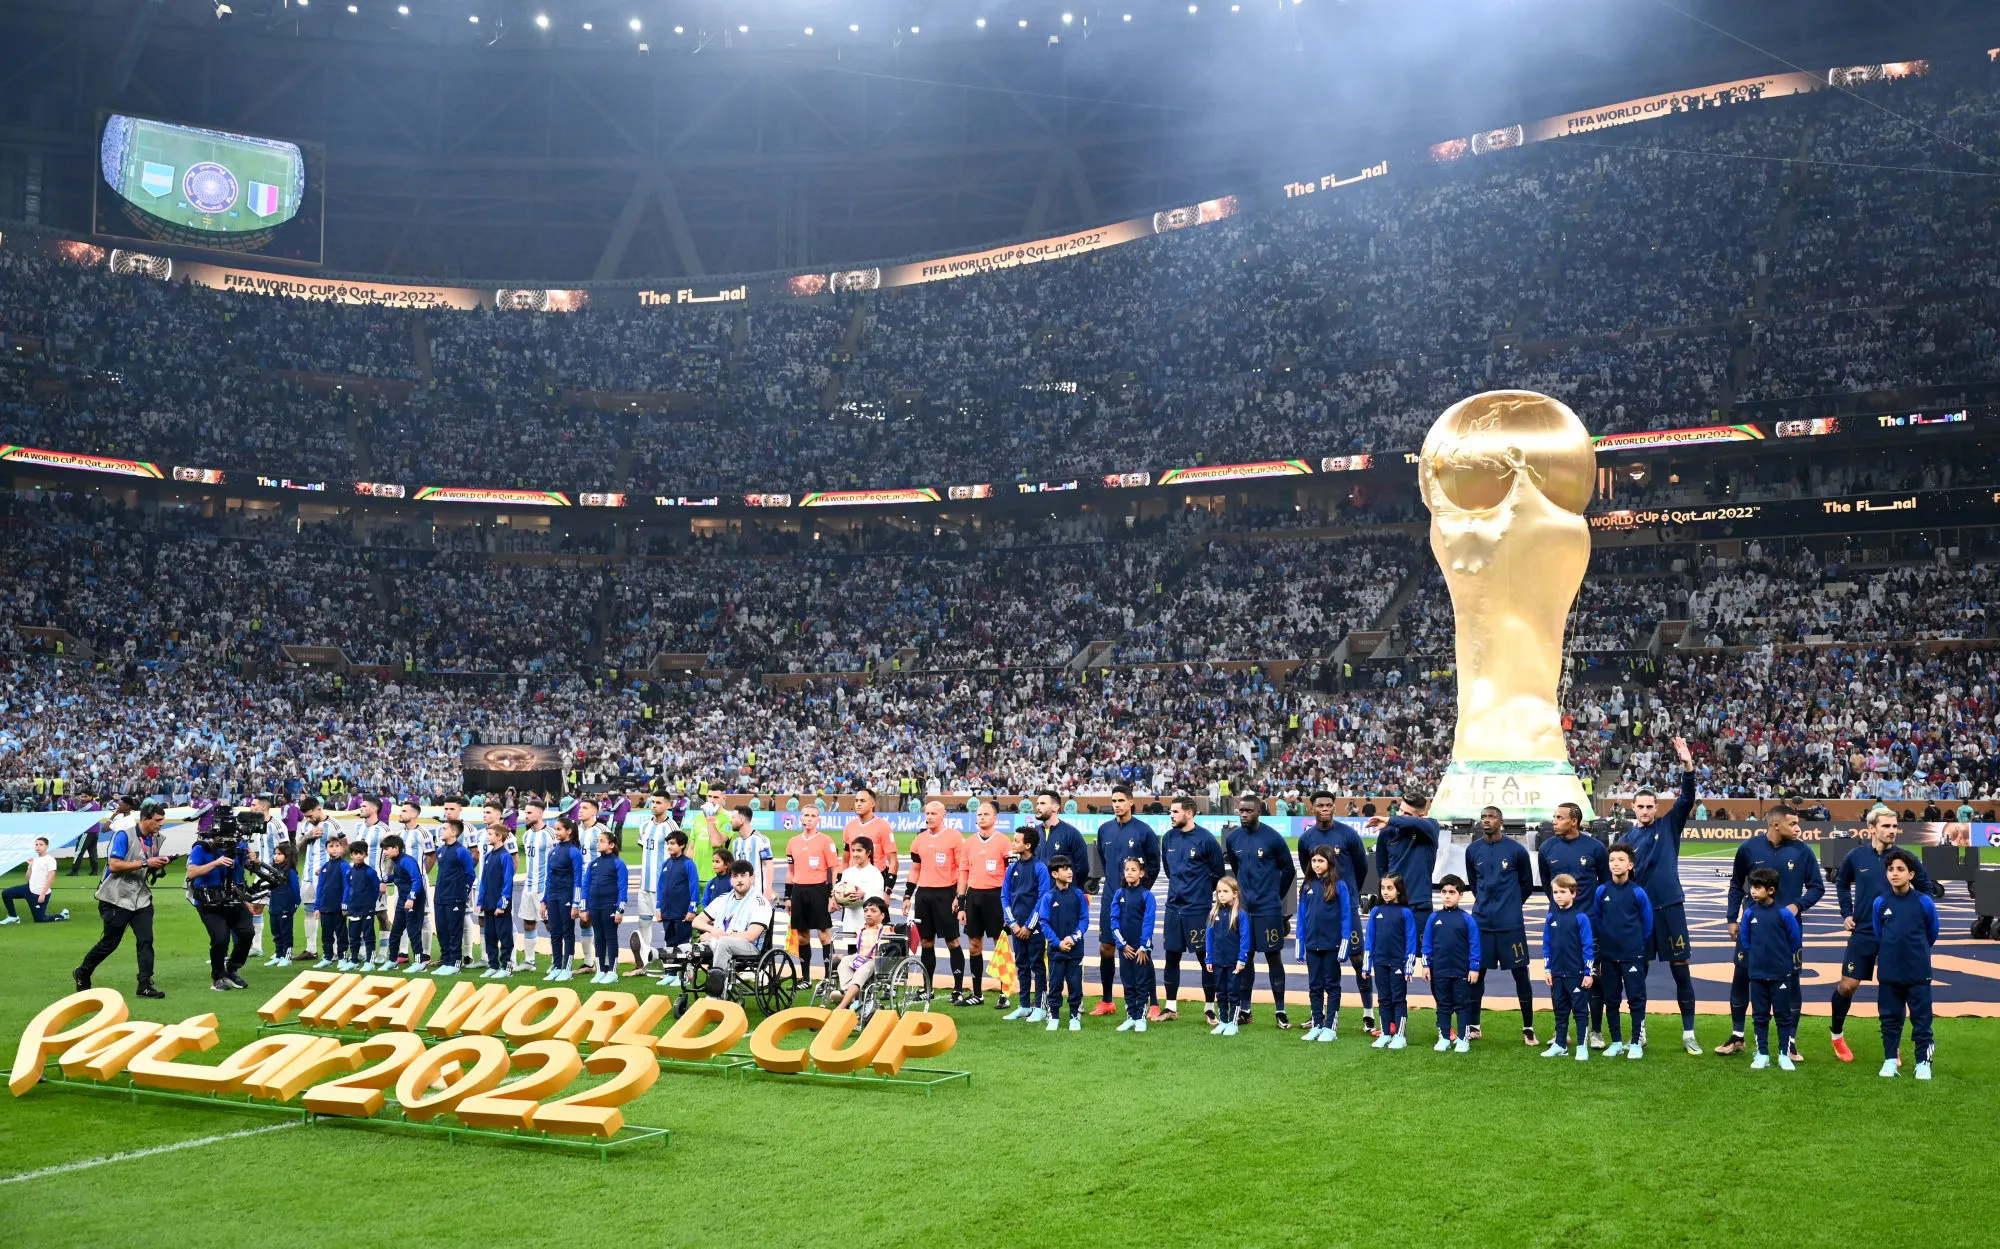 Un nombre de téléspectateurs record pour la finale de Coupe du monde -  Mondial 2022 - Finale - Argentine-France (3-3, 4-2 TAB) - 19 Janv. 2023 -  SO FOOT.com